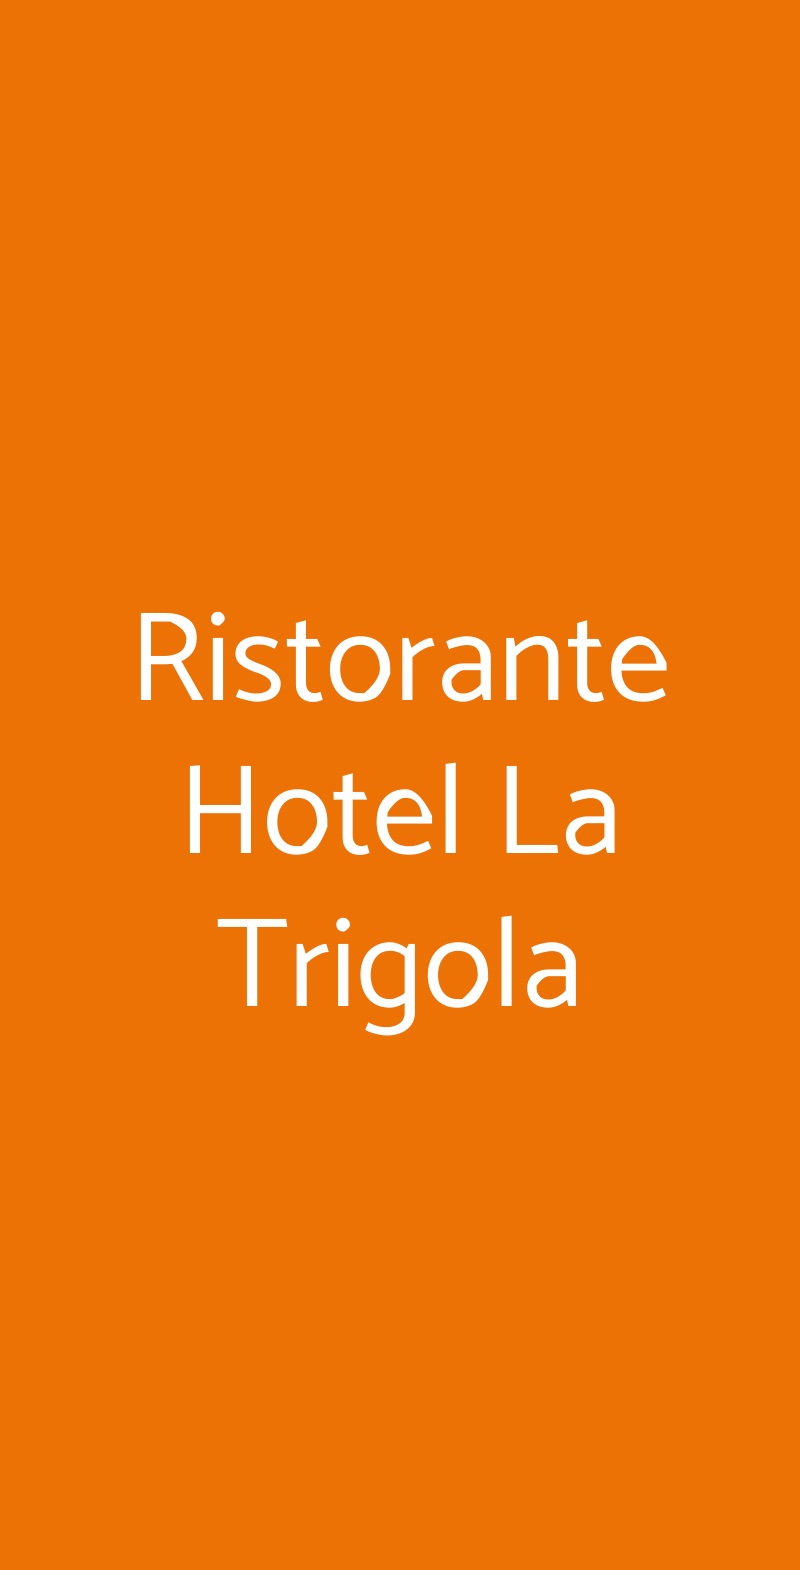 Ristorante Hotel La Trigola Santo Stefano di Magra menù 1 pagina